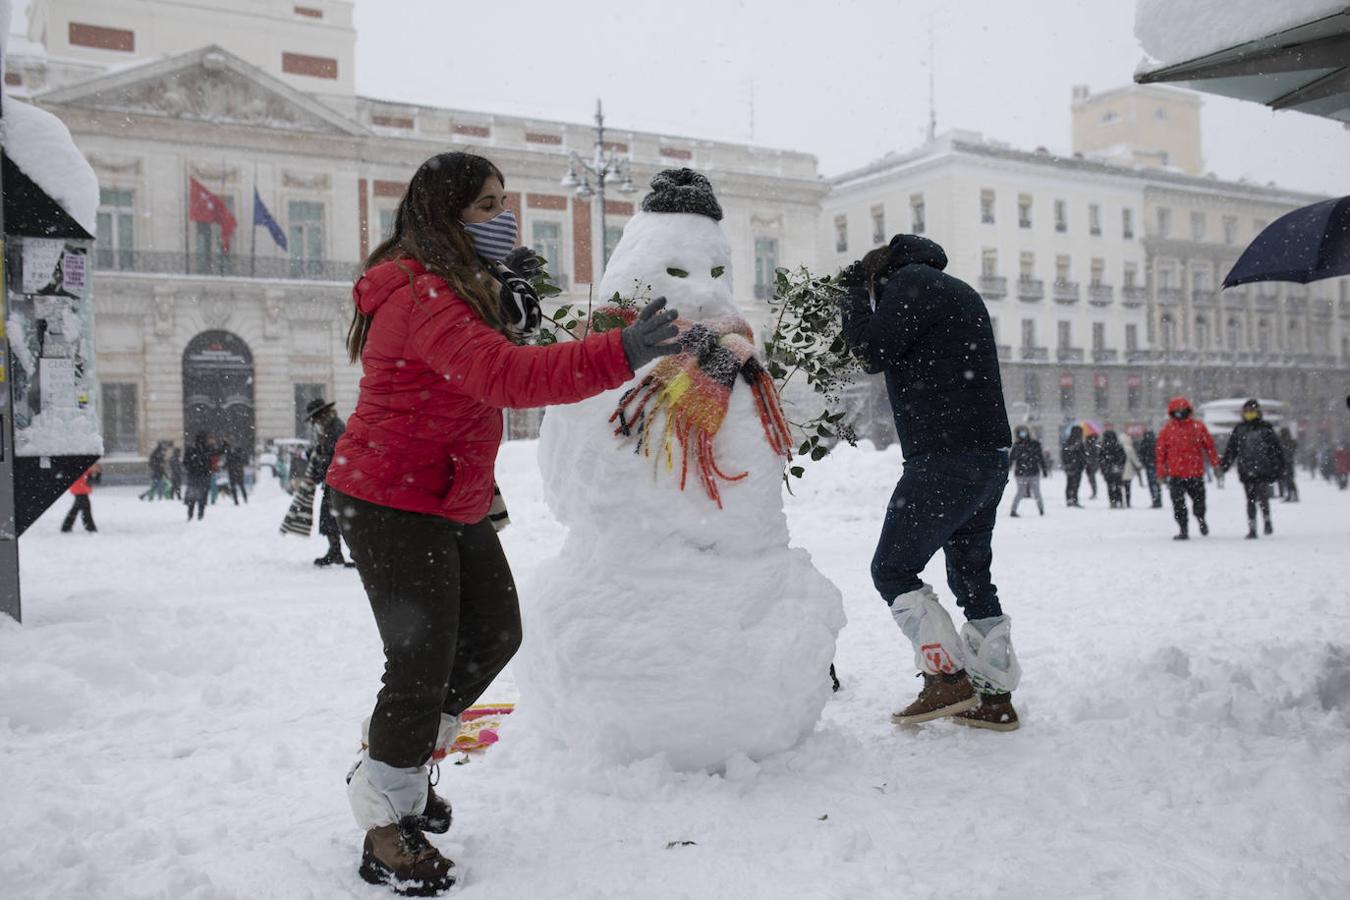 Juegos y muñecos de nieve. Incluso emblemáticas –y transitadas– zonas como la Puerta del Sol contenían tal cantidad de nieve que parecía el puerto de Navacerrada.